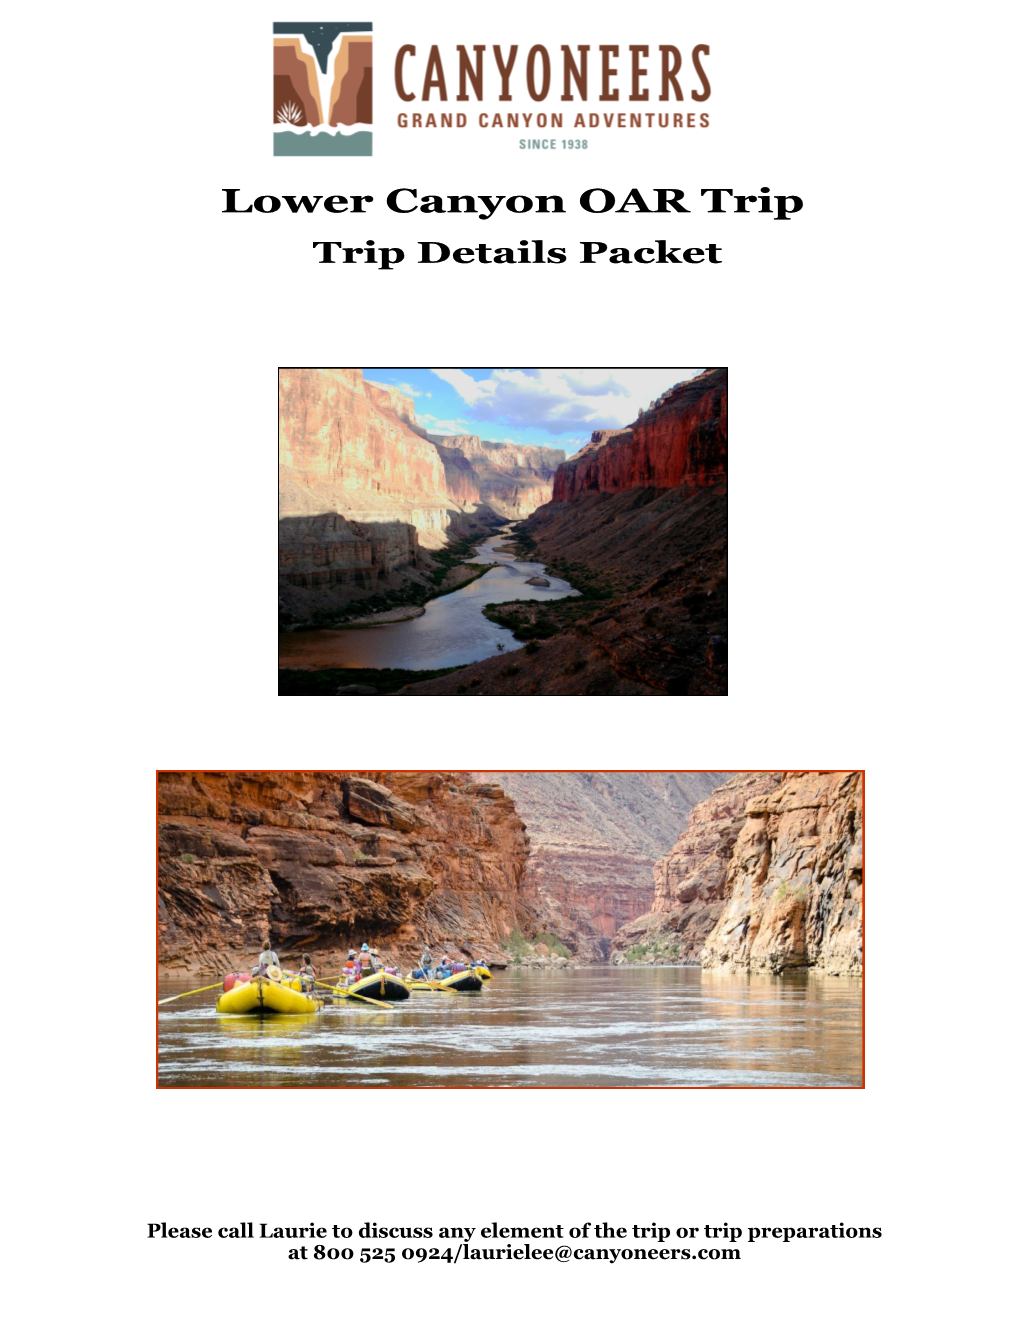 Lower Canyon OAR Trip Trip Details Packet